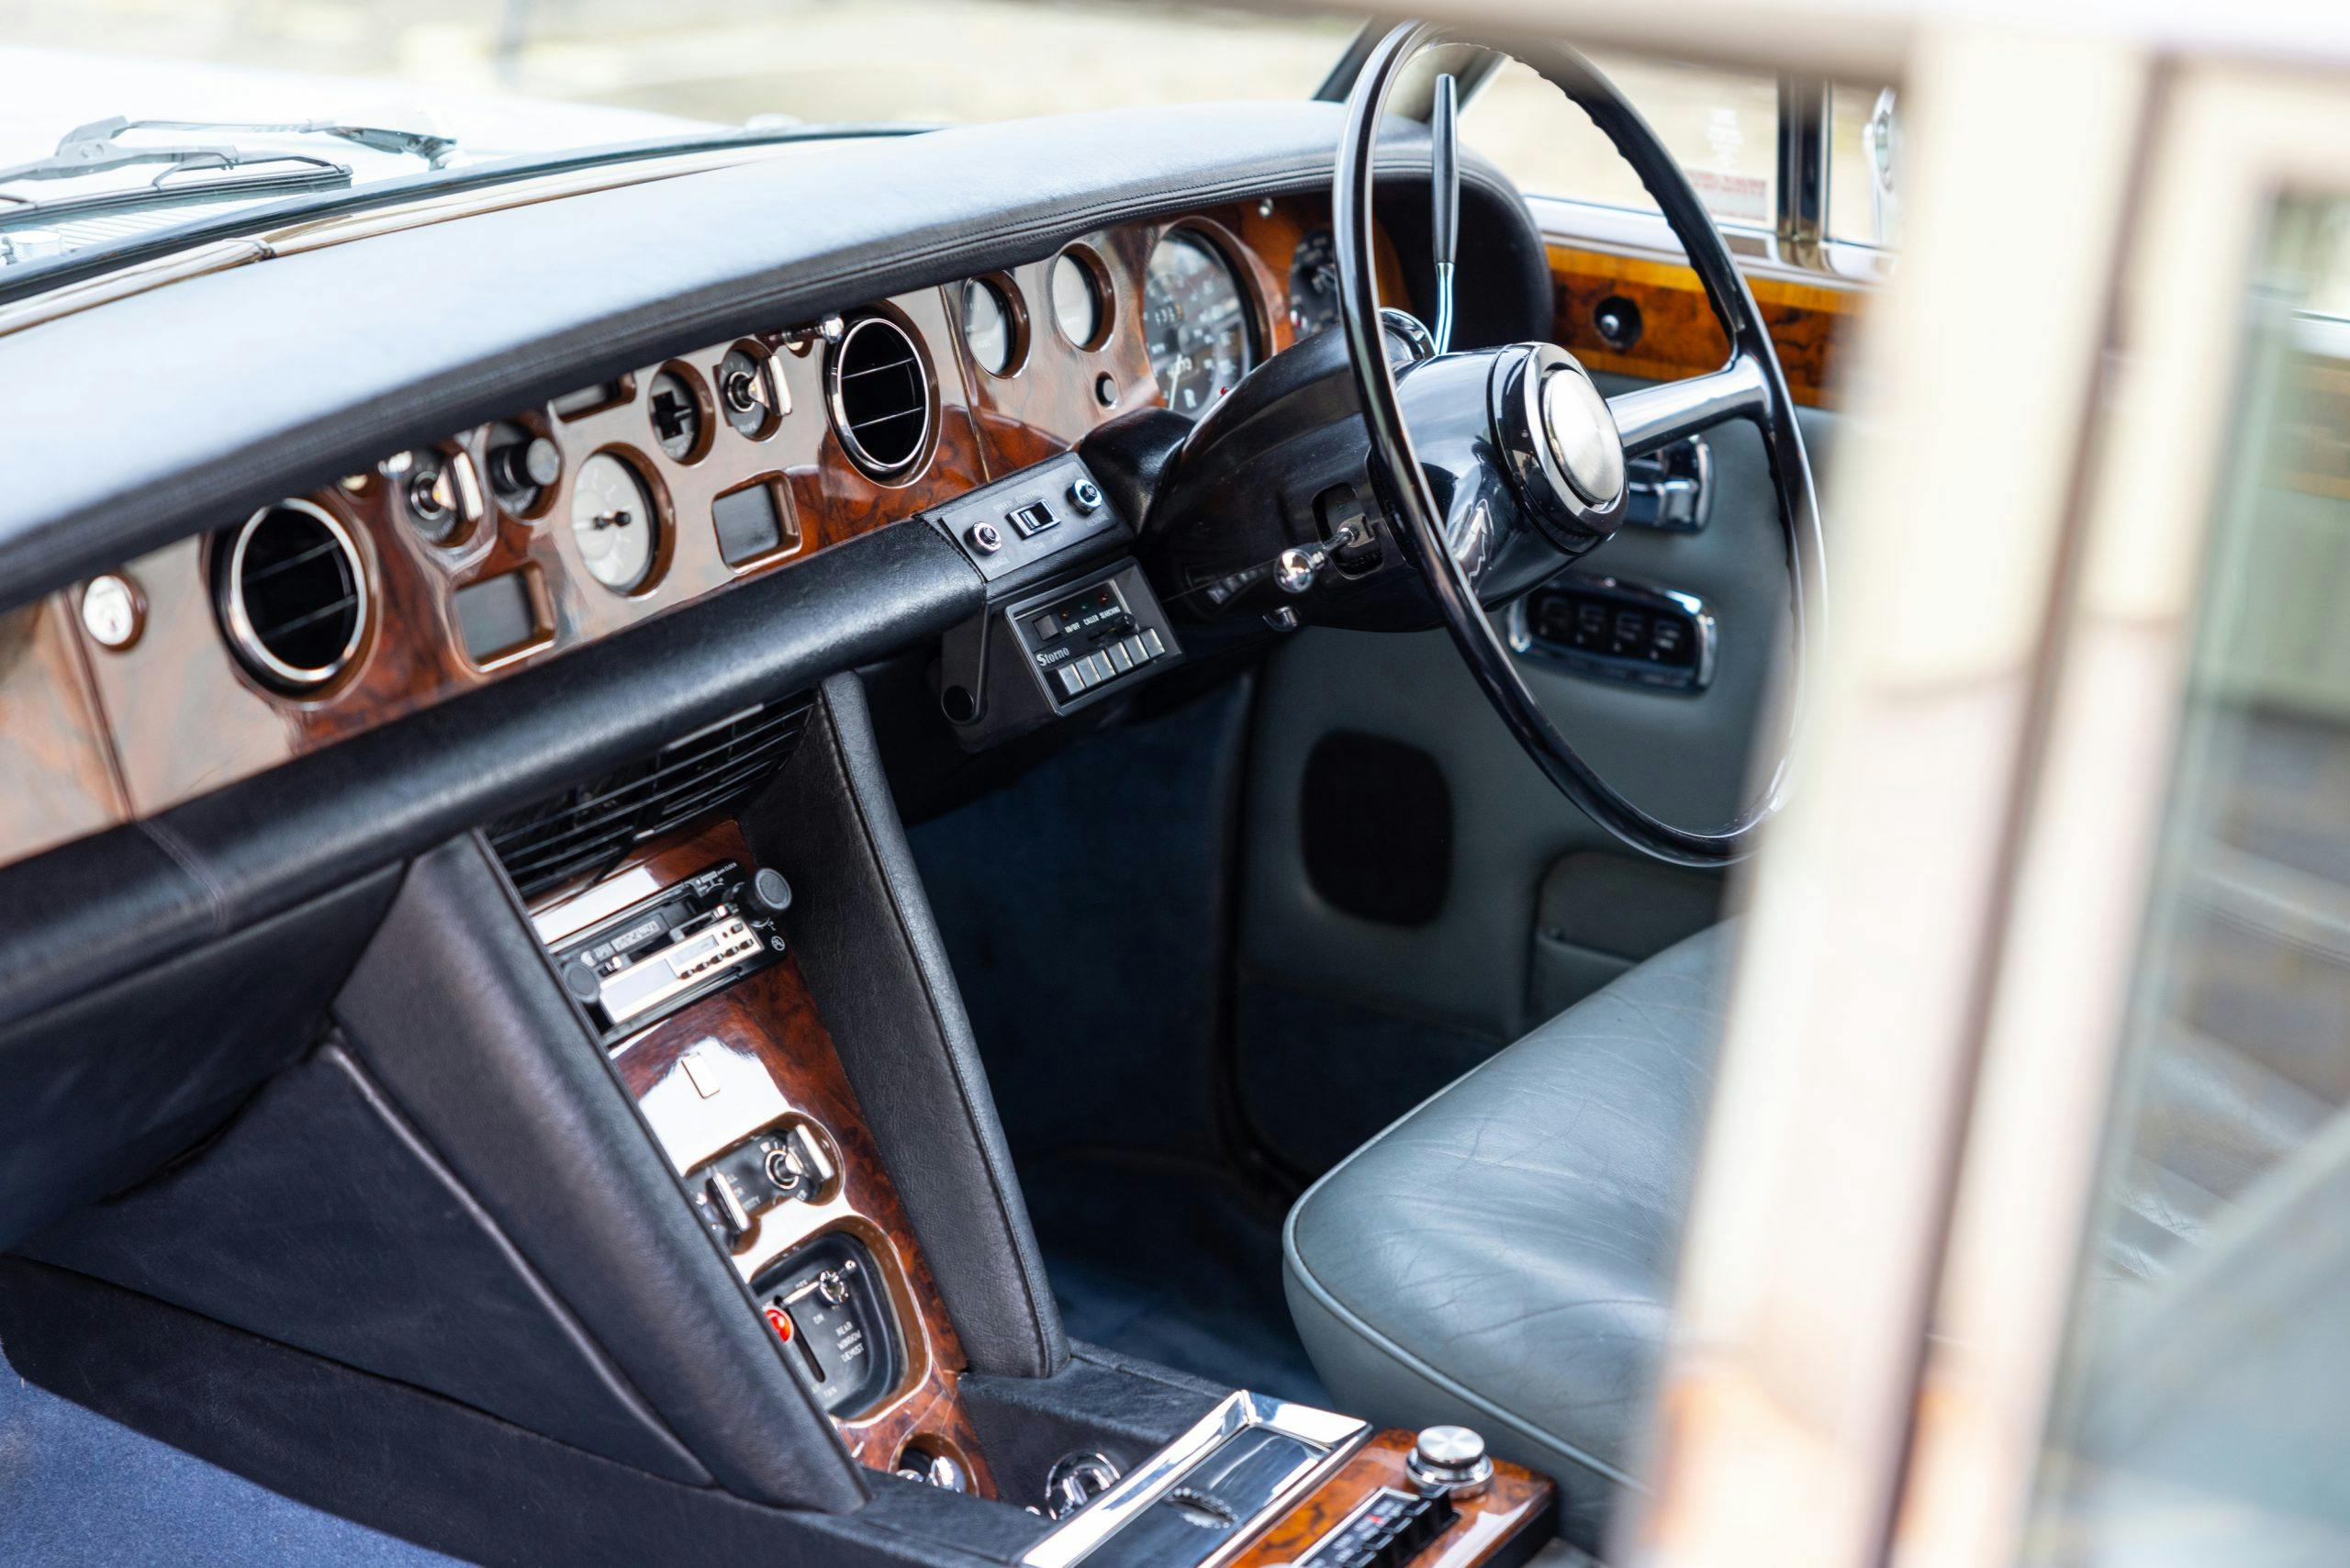 Freddy Mercury 1974 Rolls Royce Silver Shadow interior